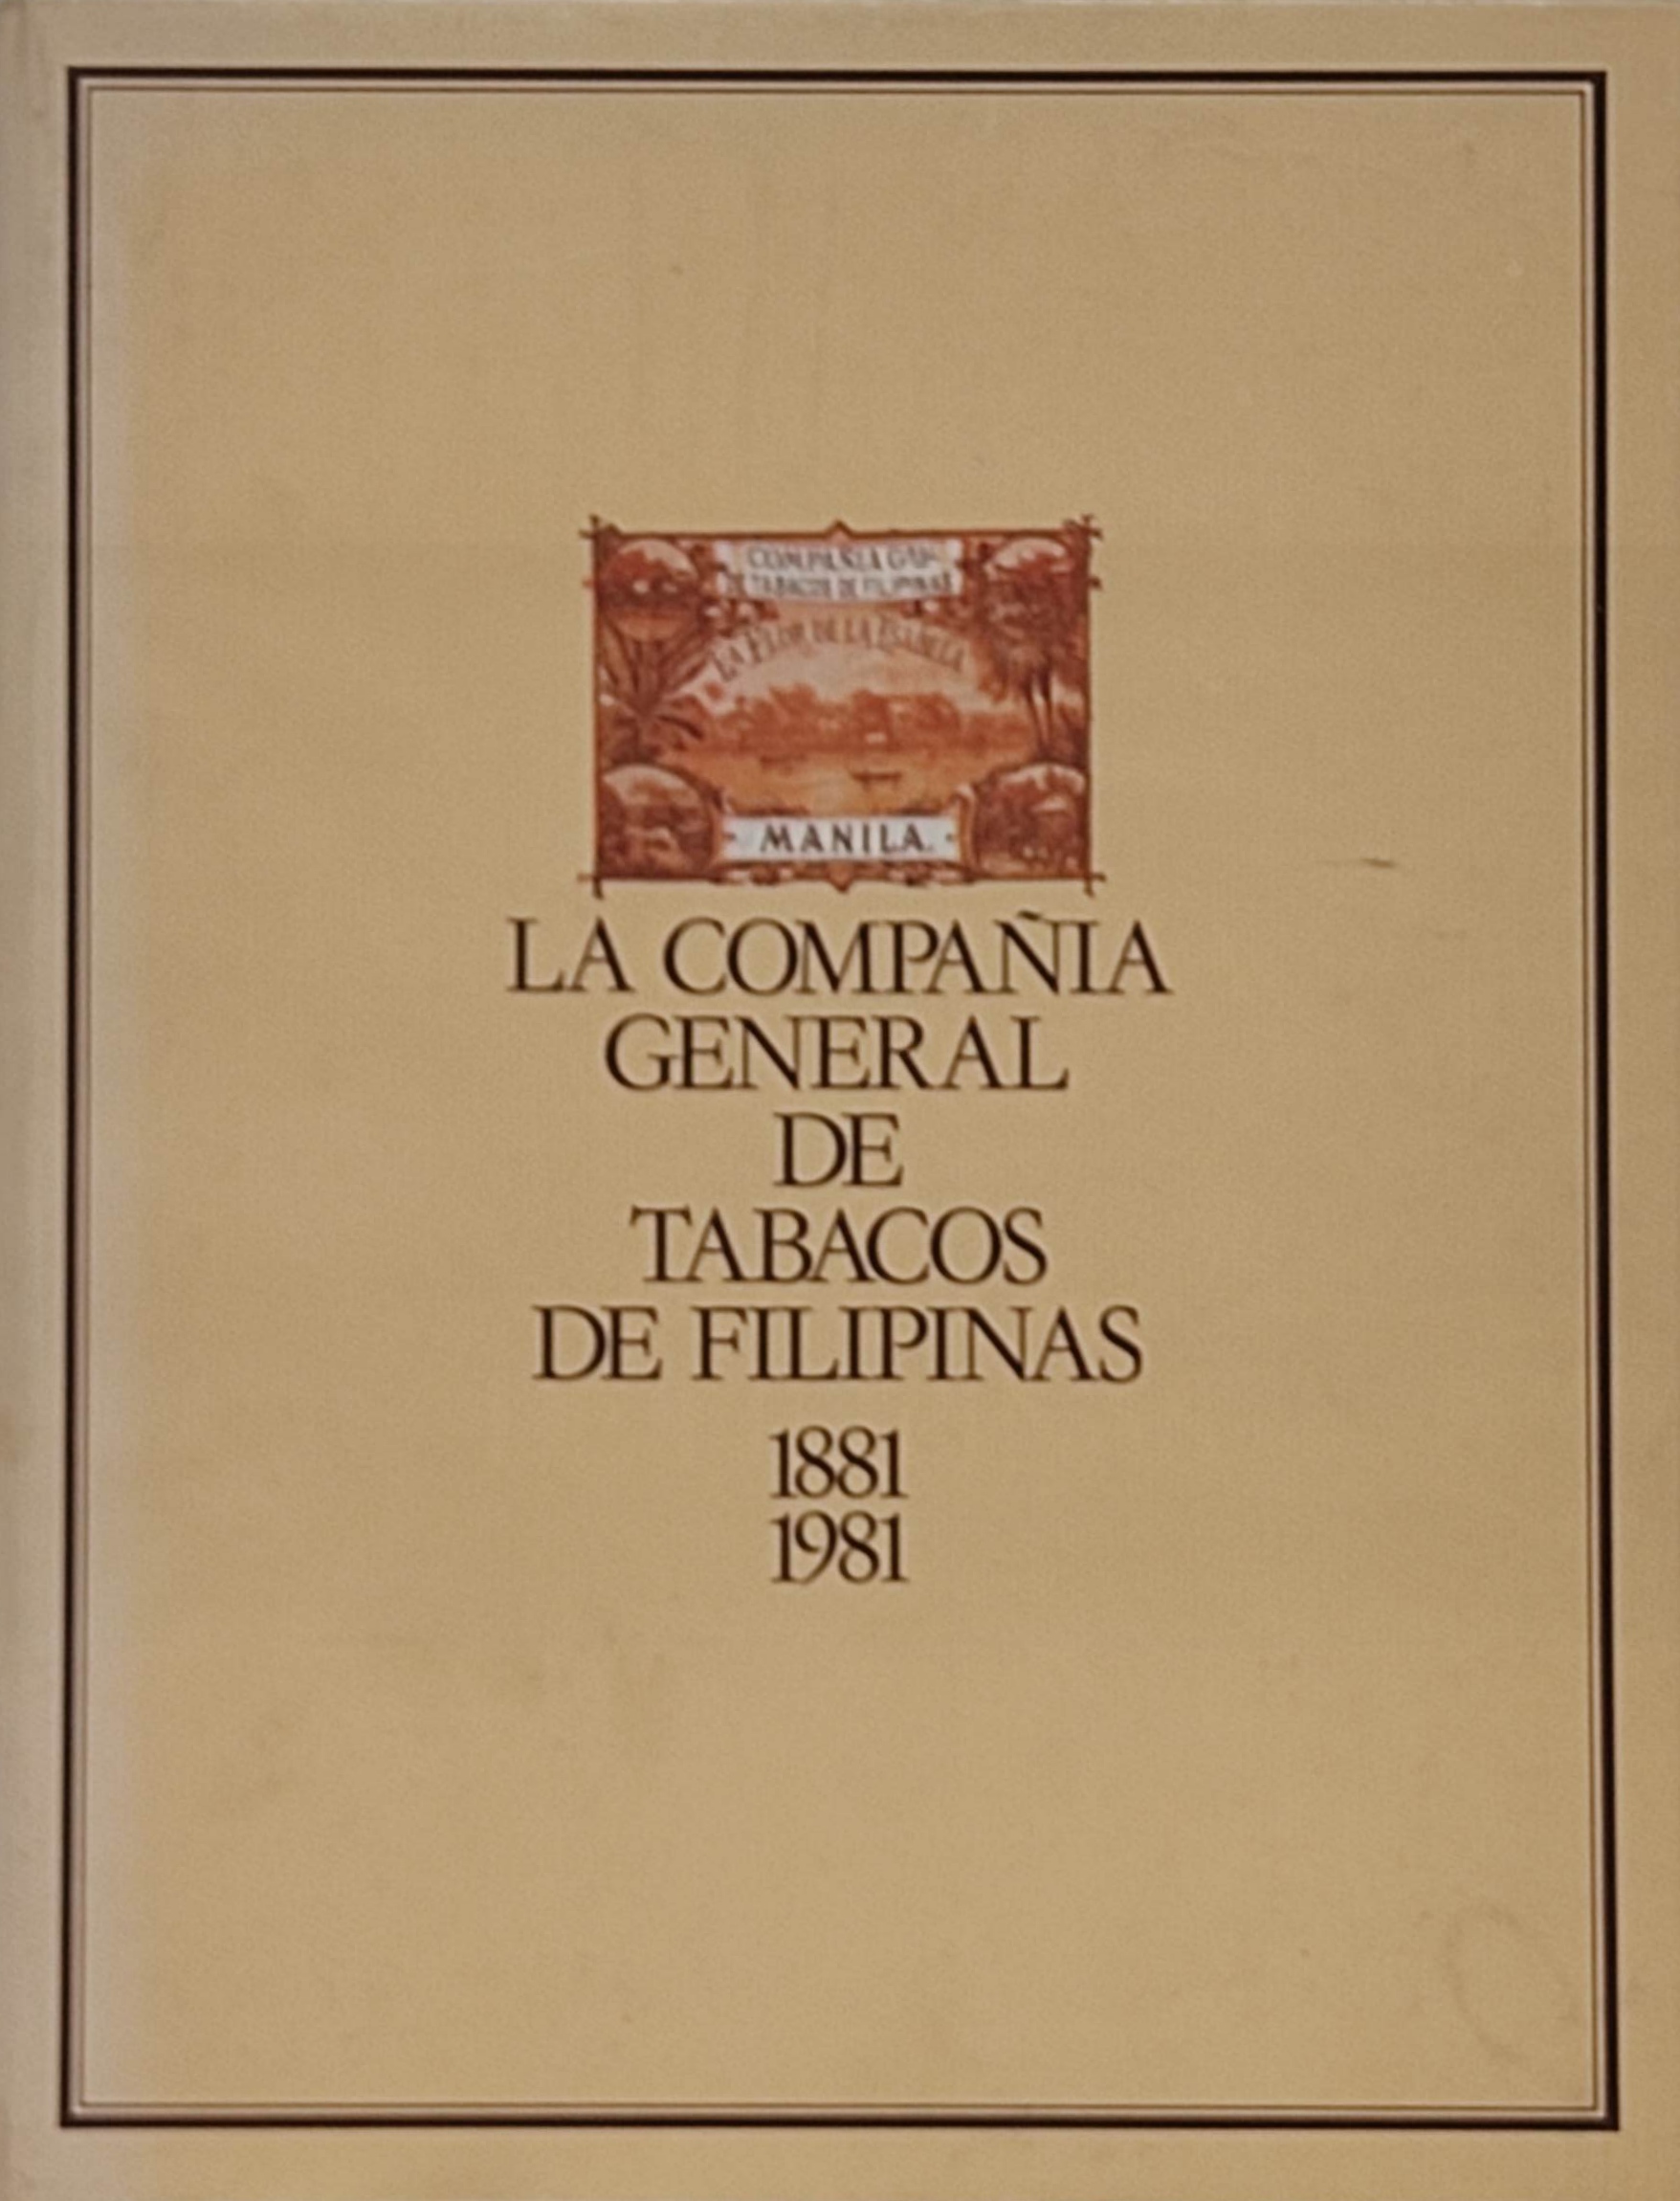 LA COMPAÑÍA GENERAL DE TABACOS DE FILIPINAS. BARCELONA 